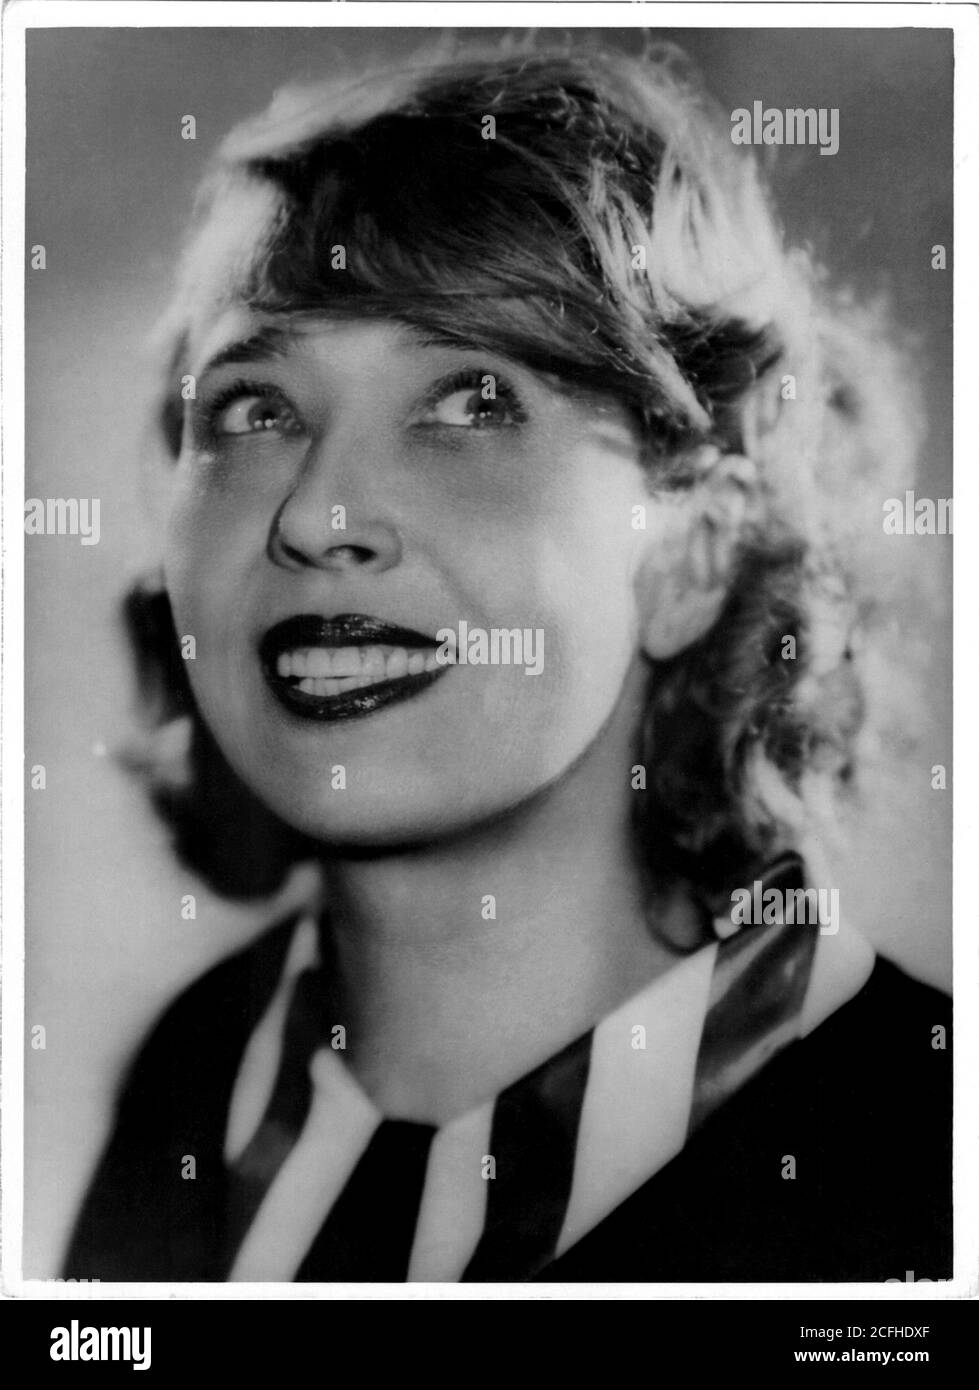 1930 ca, PARIGI, FRANCIA: La celebre cantante e ballerina parigina della  Belle Epoque MISTINGUETT (nata Jeanne-Marie Bourgeois 1875-1956), ballerina  di PARIGI-MISS. Foto di un fotografo sconosciuto. - CABARET - VAUDEVILLE -  BALLERINA -